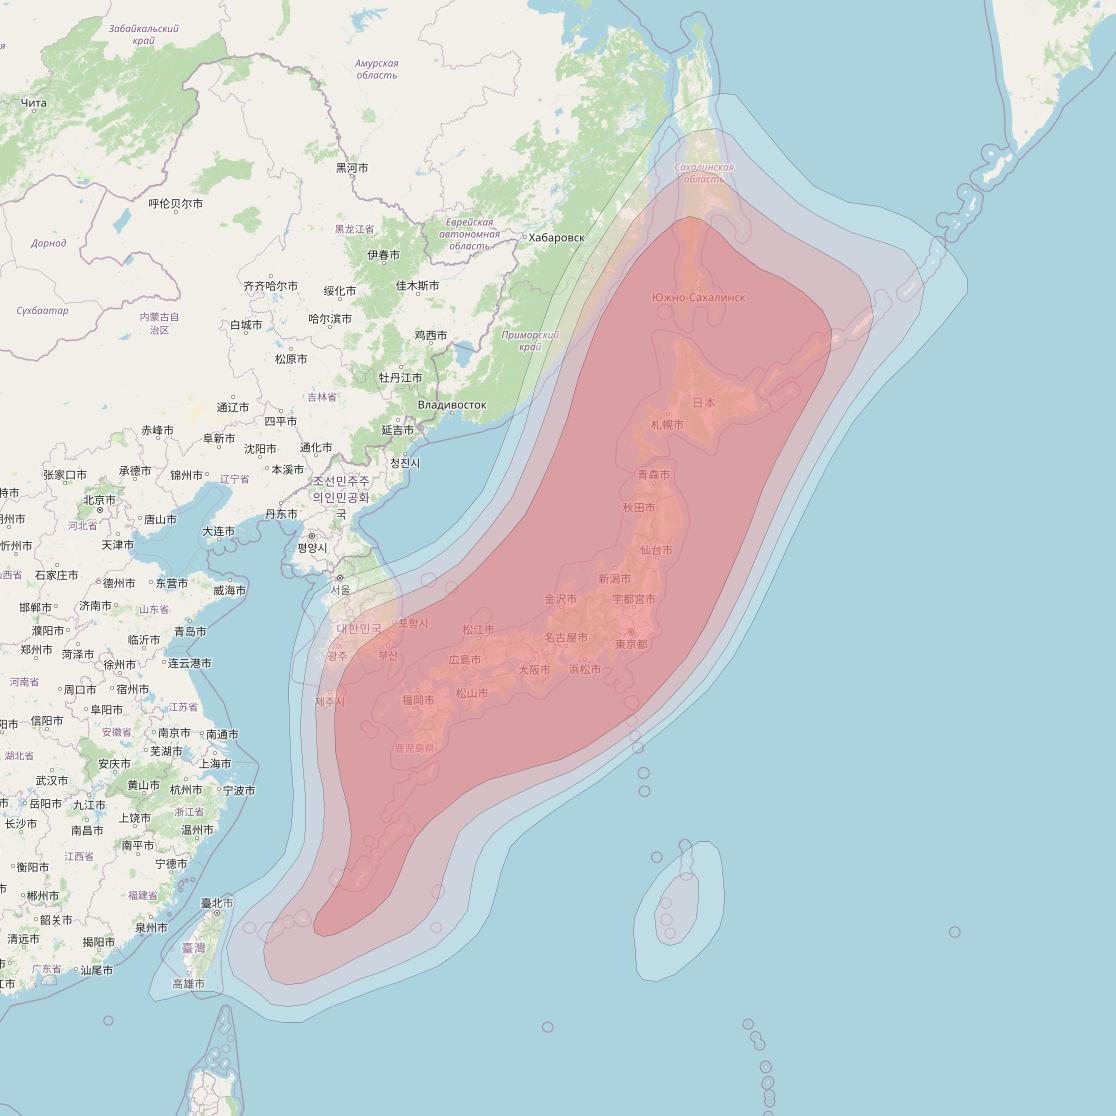 JCSat 3A at 128° E downlink Ku-band Japan Beam coverage map